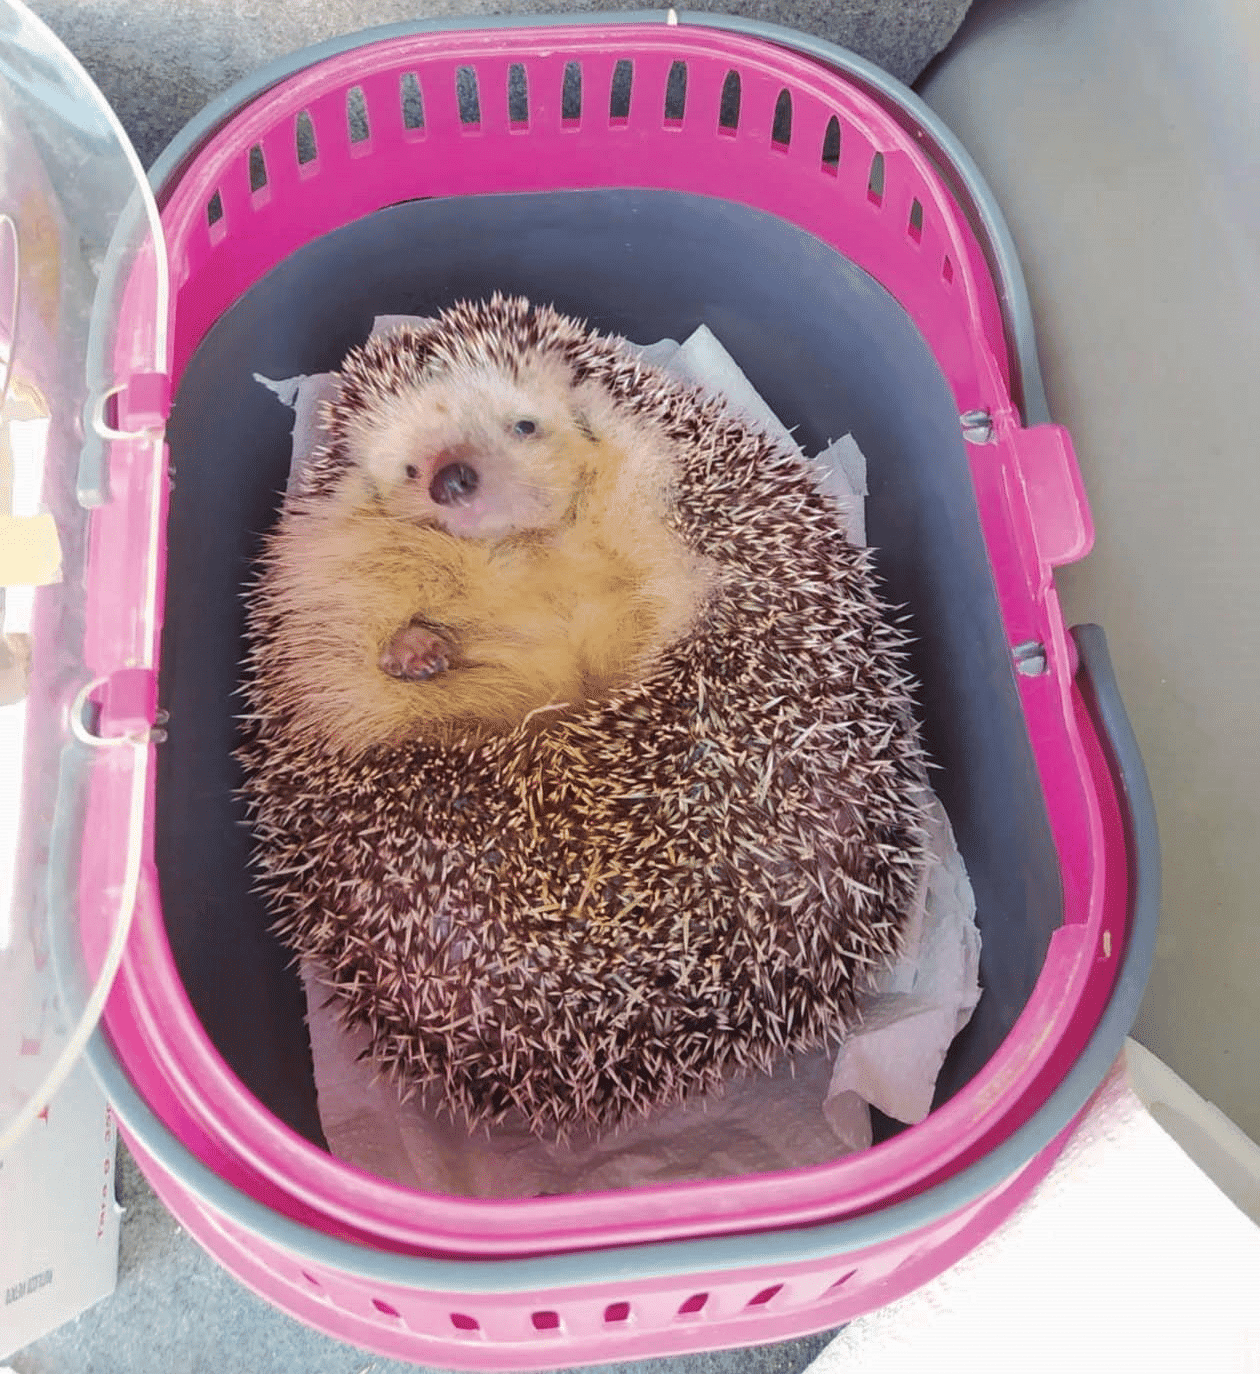 Heaviest Hedgehog